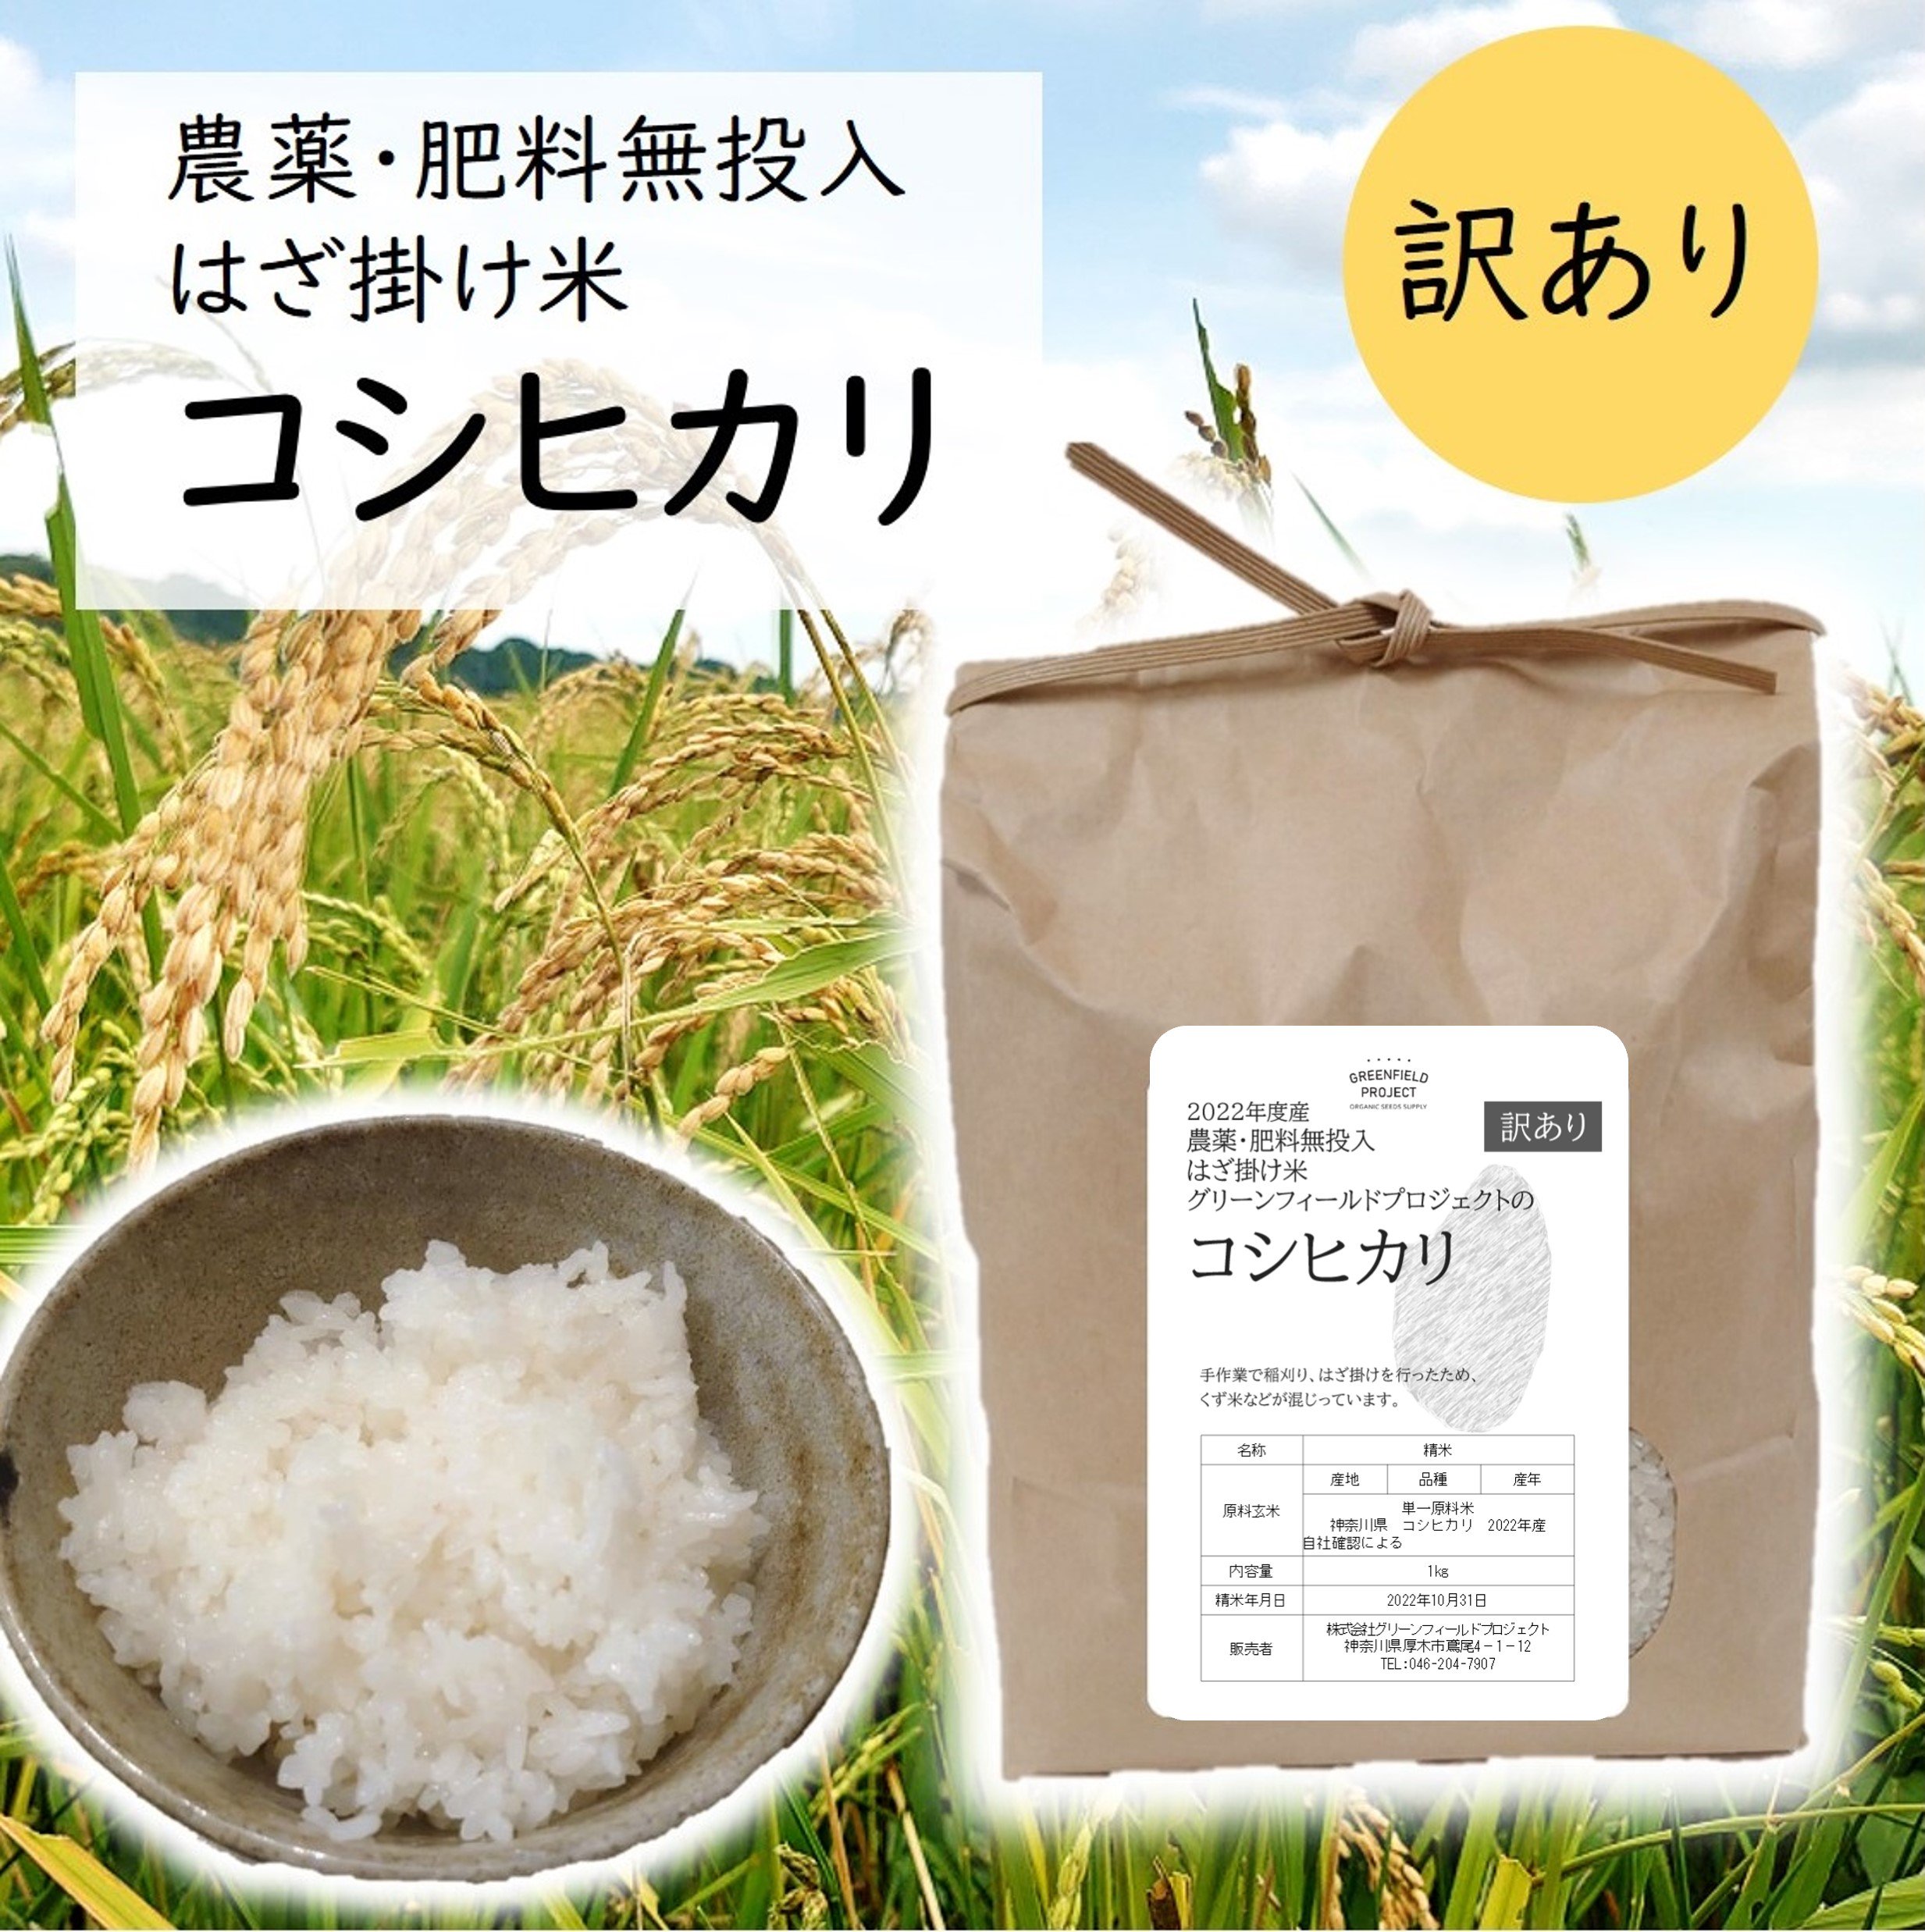 くず米 鳥のエサ 玄米 950g 送料無料 ポイント消化